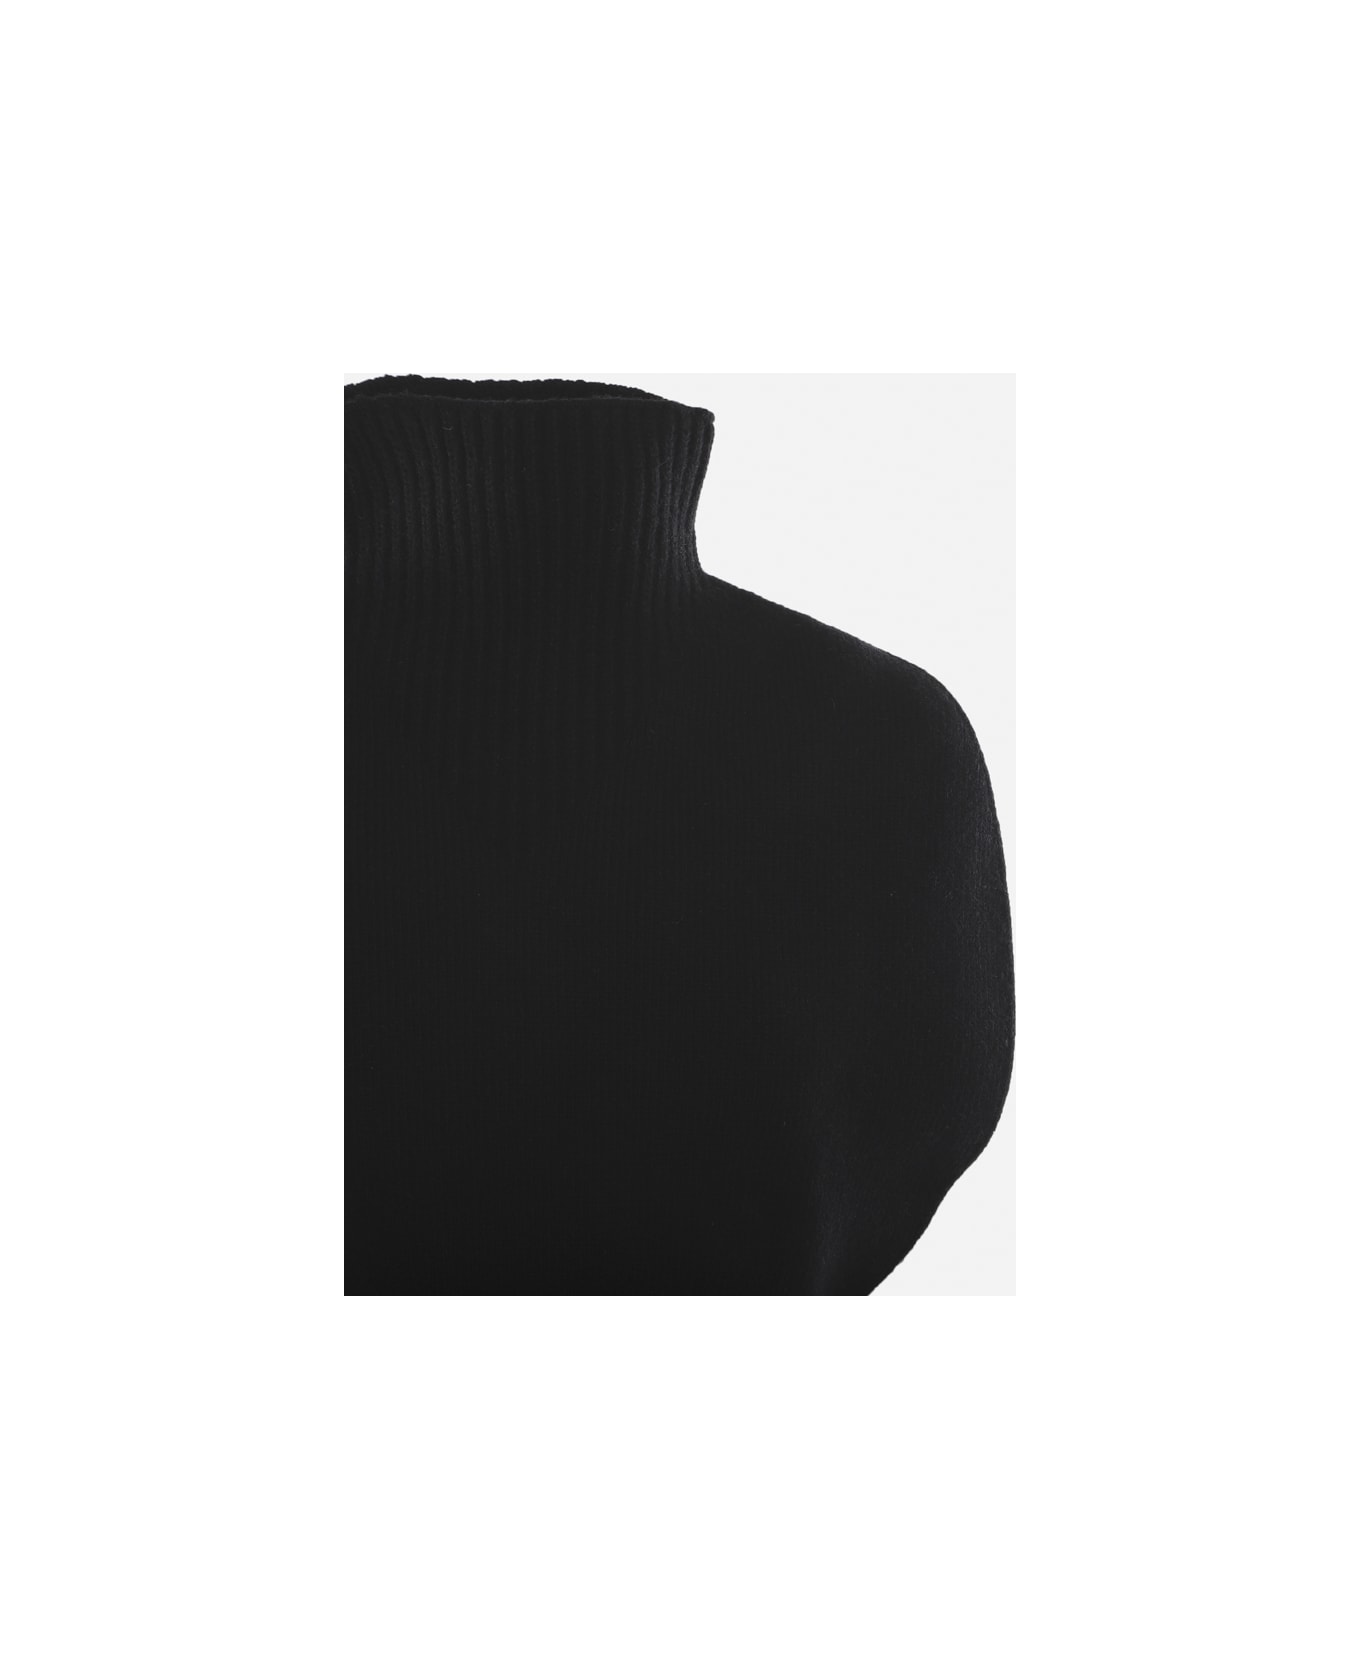 Bottega Veneta High Neck Sweater Made Of Wool - Black ニットウェア